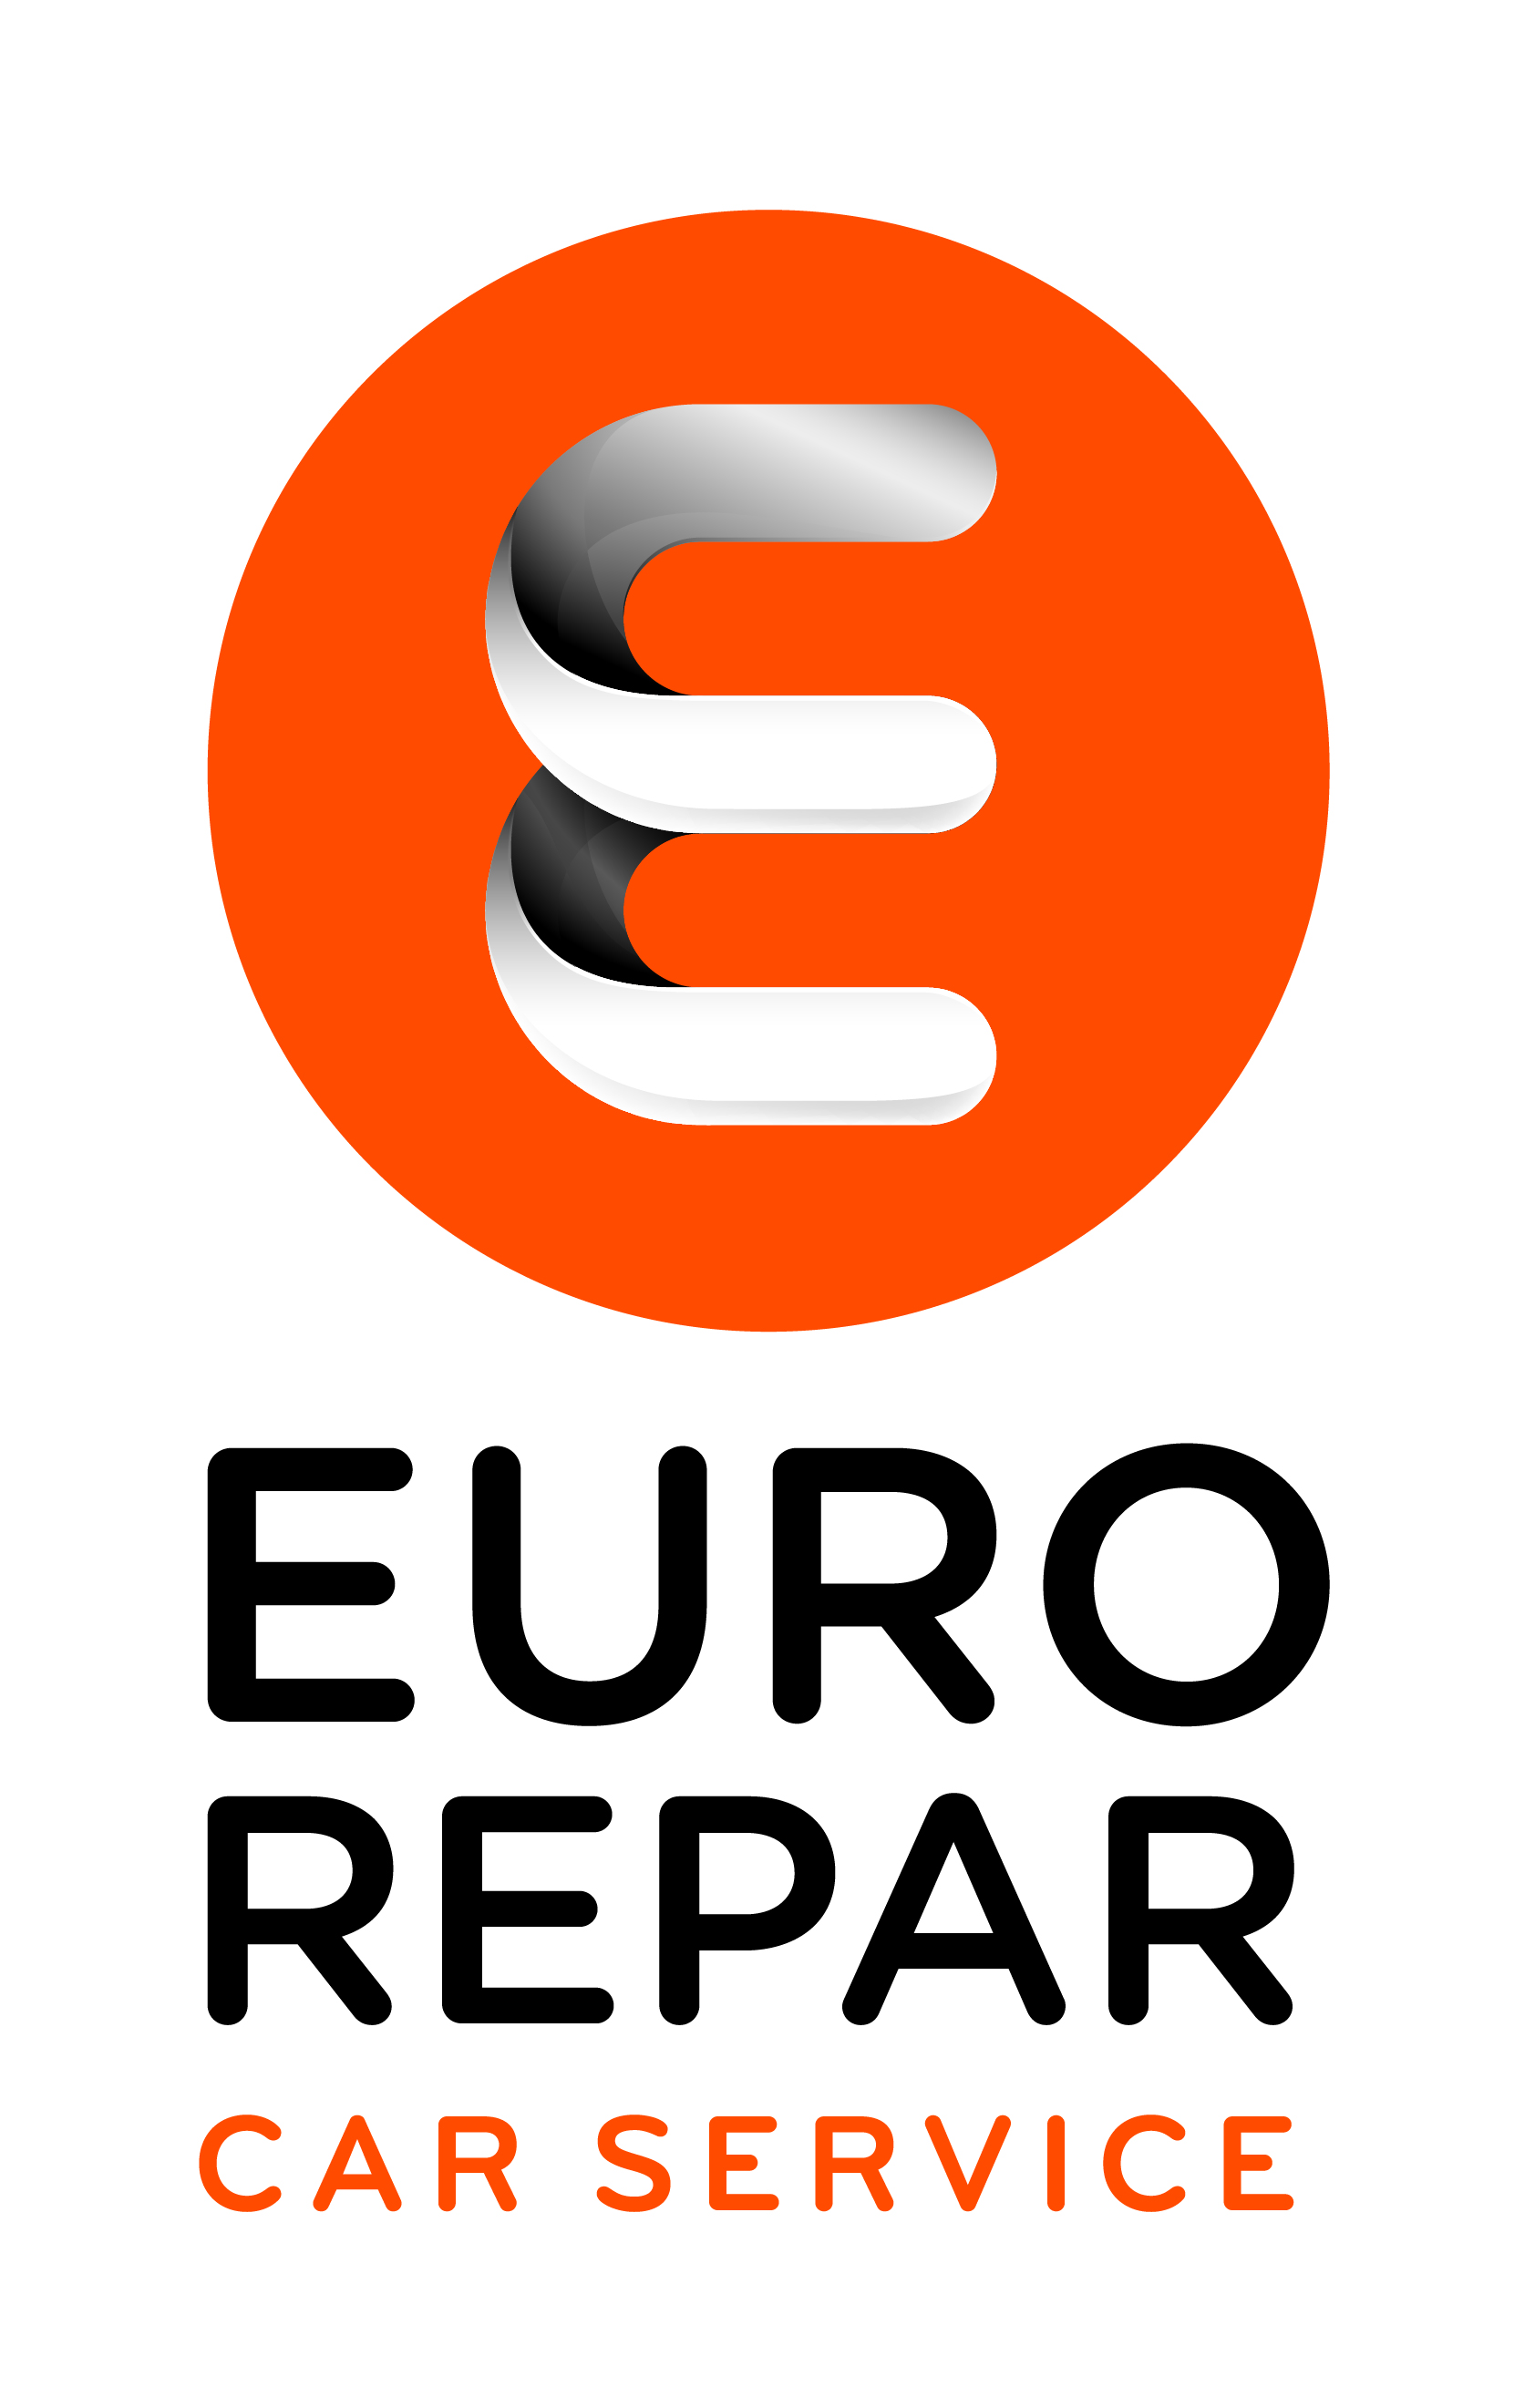 Autohaus Egeberg logo